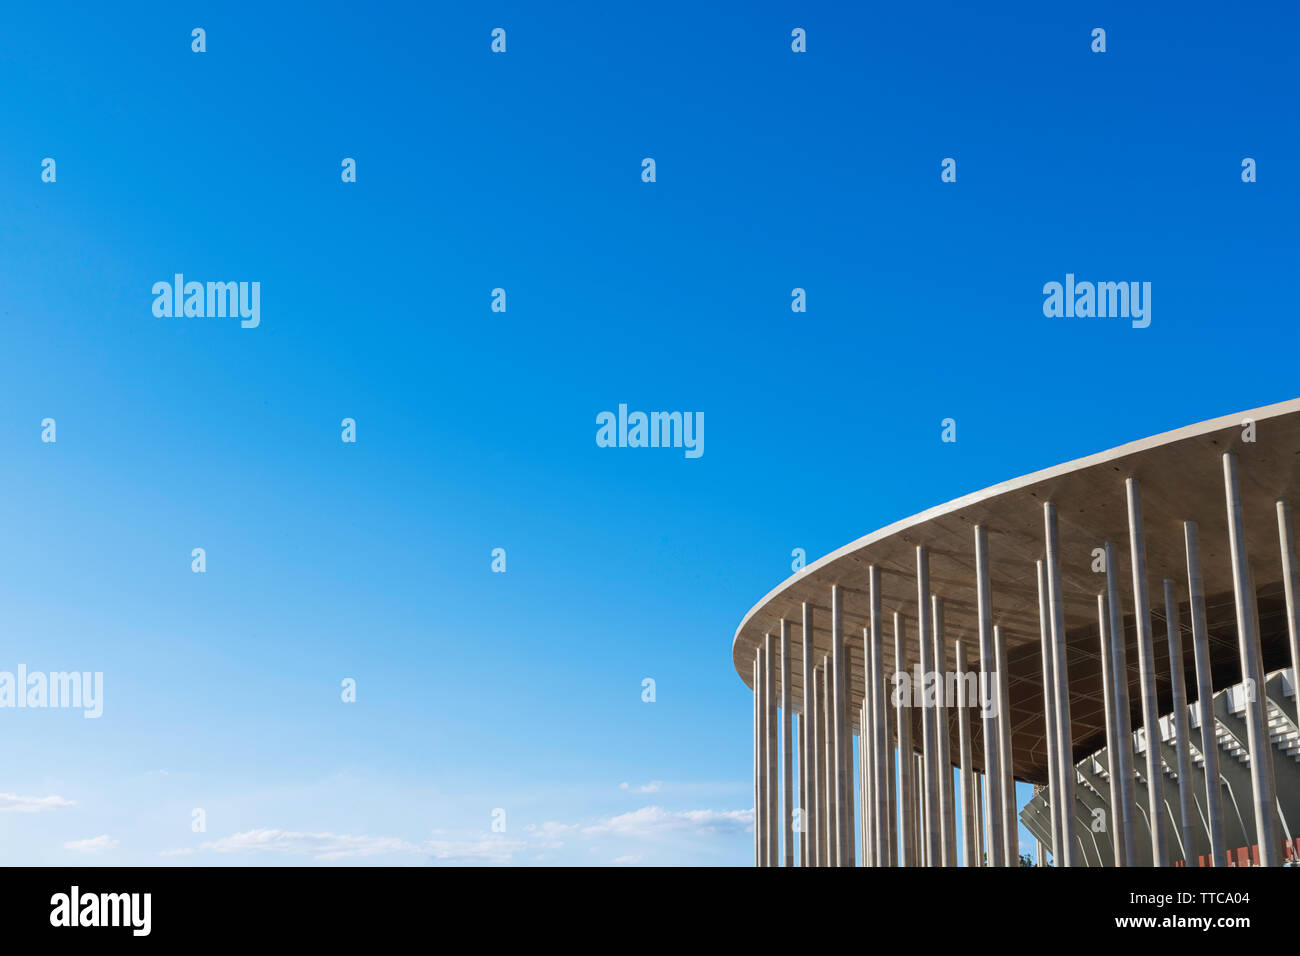 The National Stadium in Brasilia, Brazil. Stock Photo